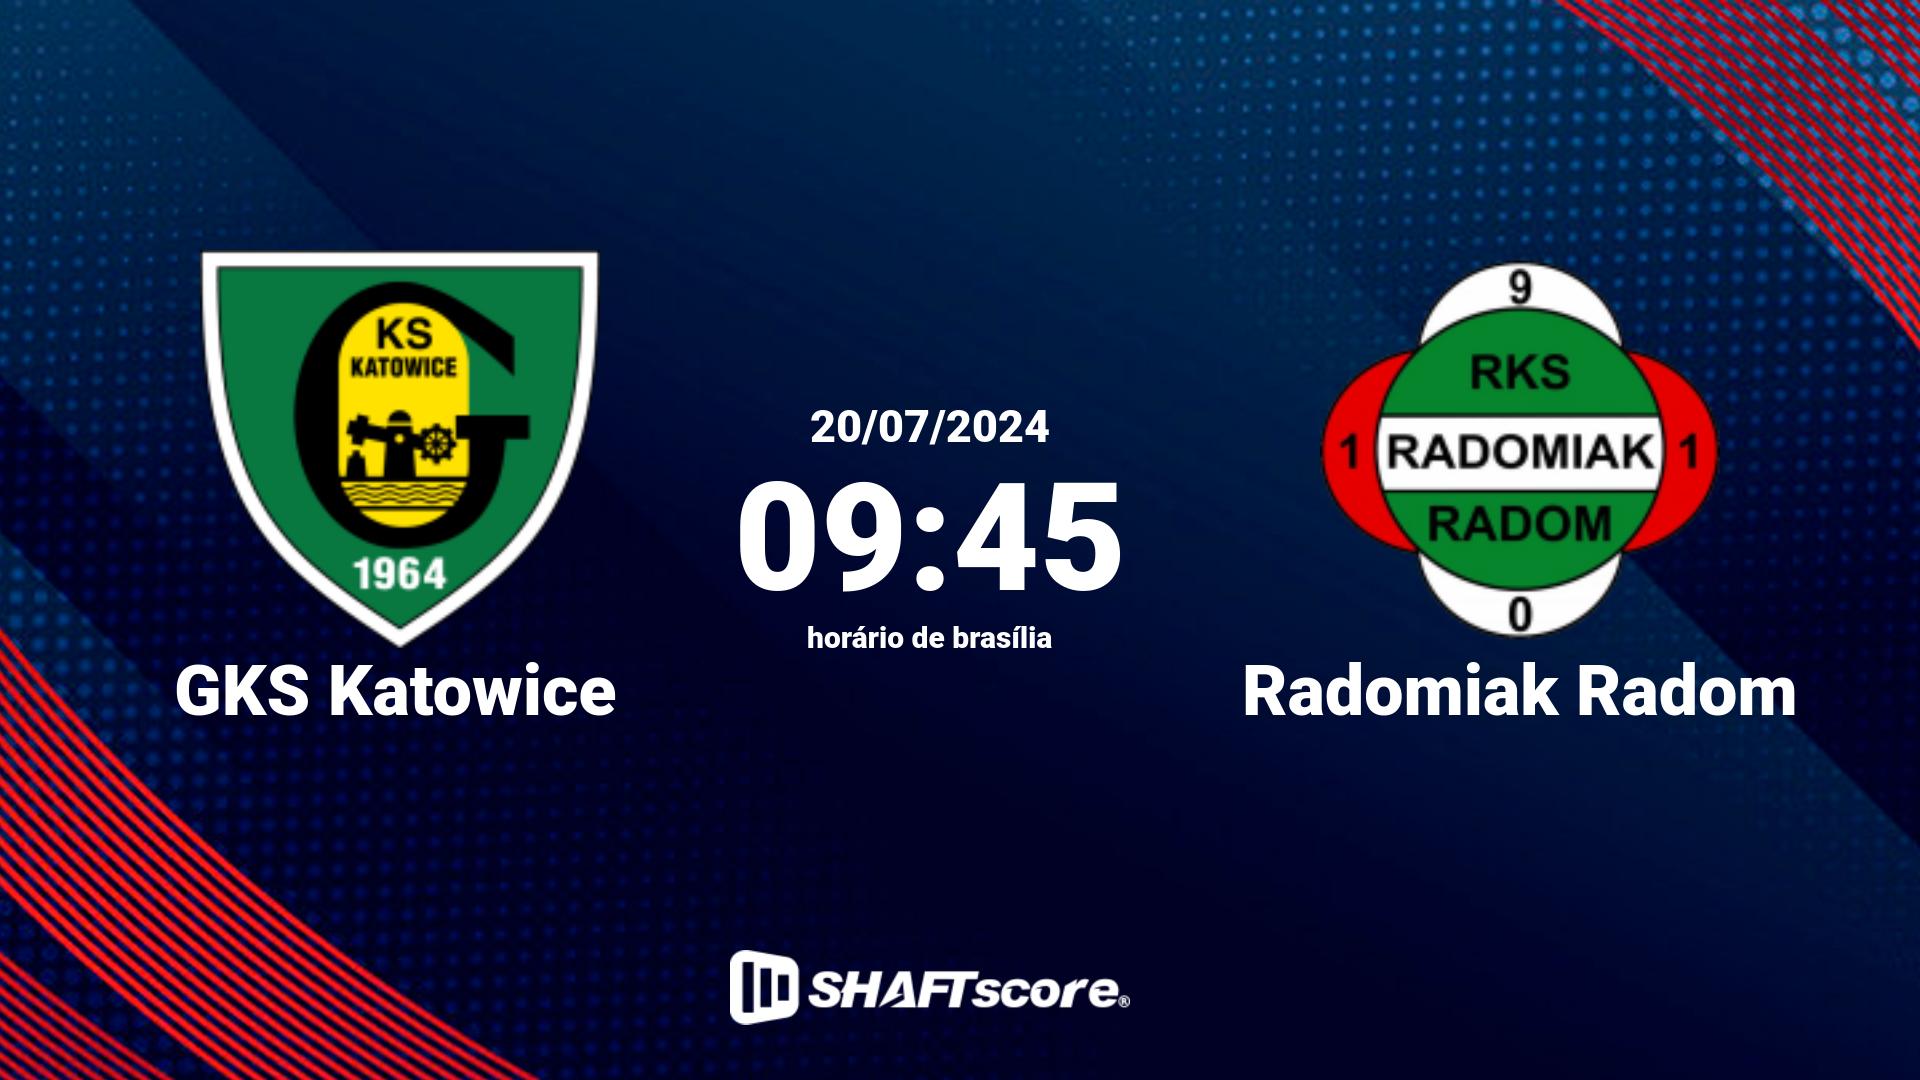 Estatísticas do jogo GKS Katowice vs Radomiak Radom 20.07 09:45